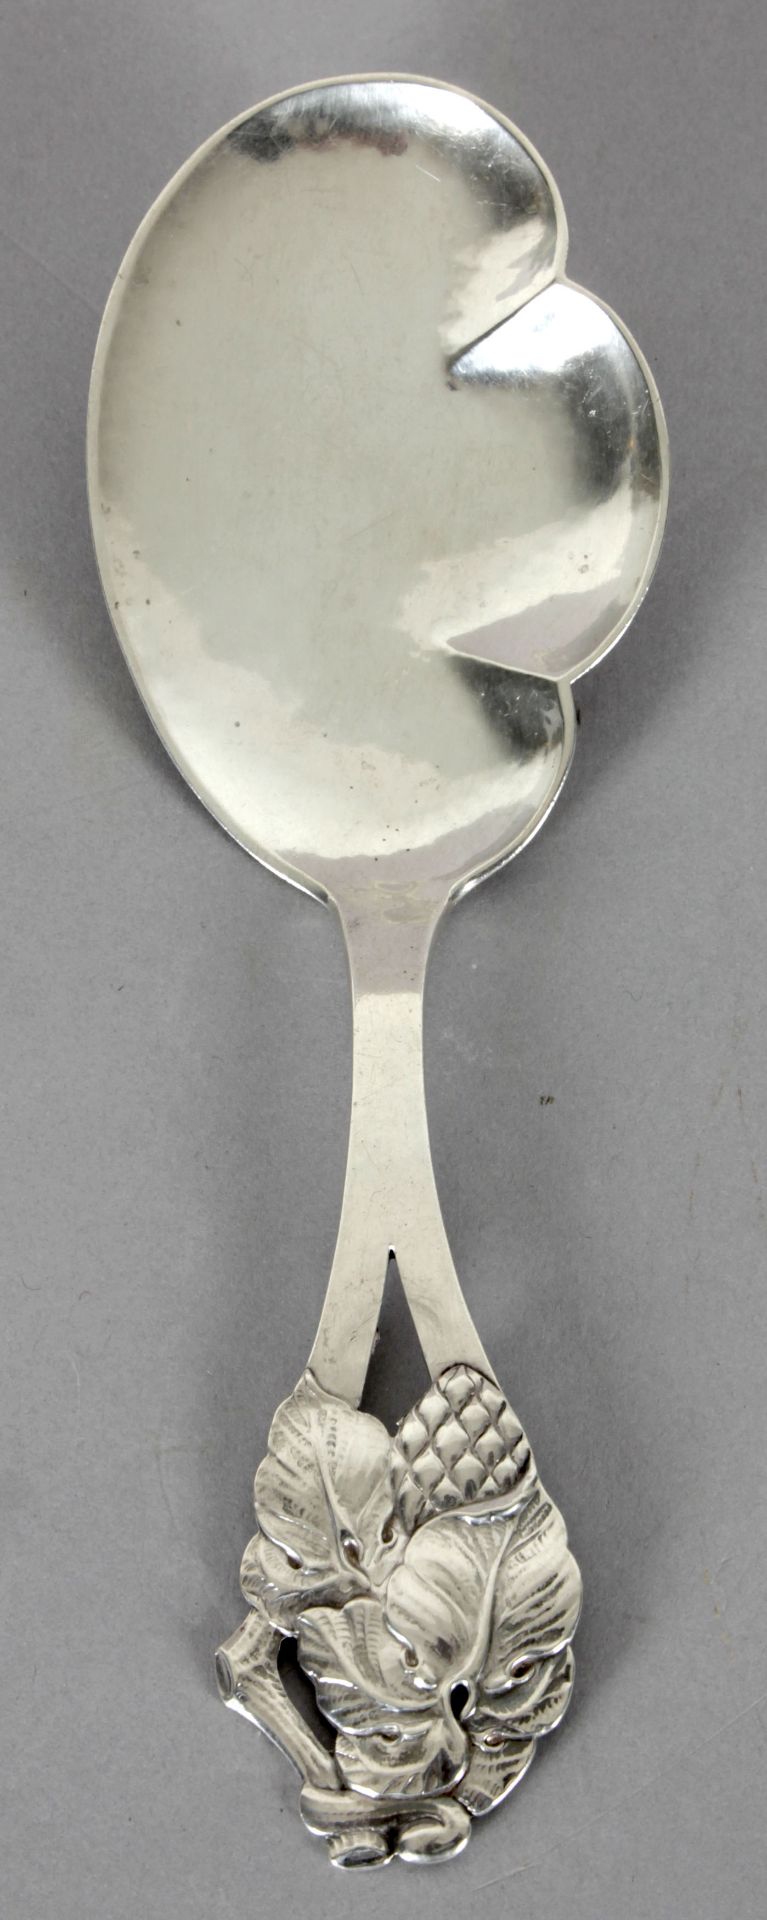 Vorlegelöffel aus Silber, Kopenhagen 1936, Handarbeit